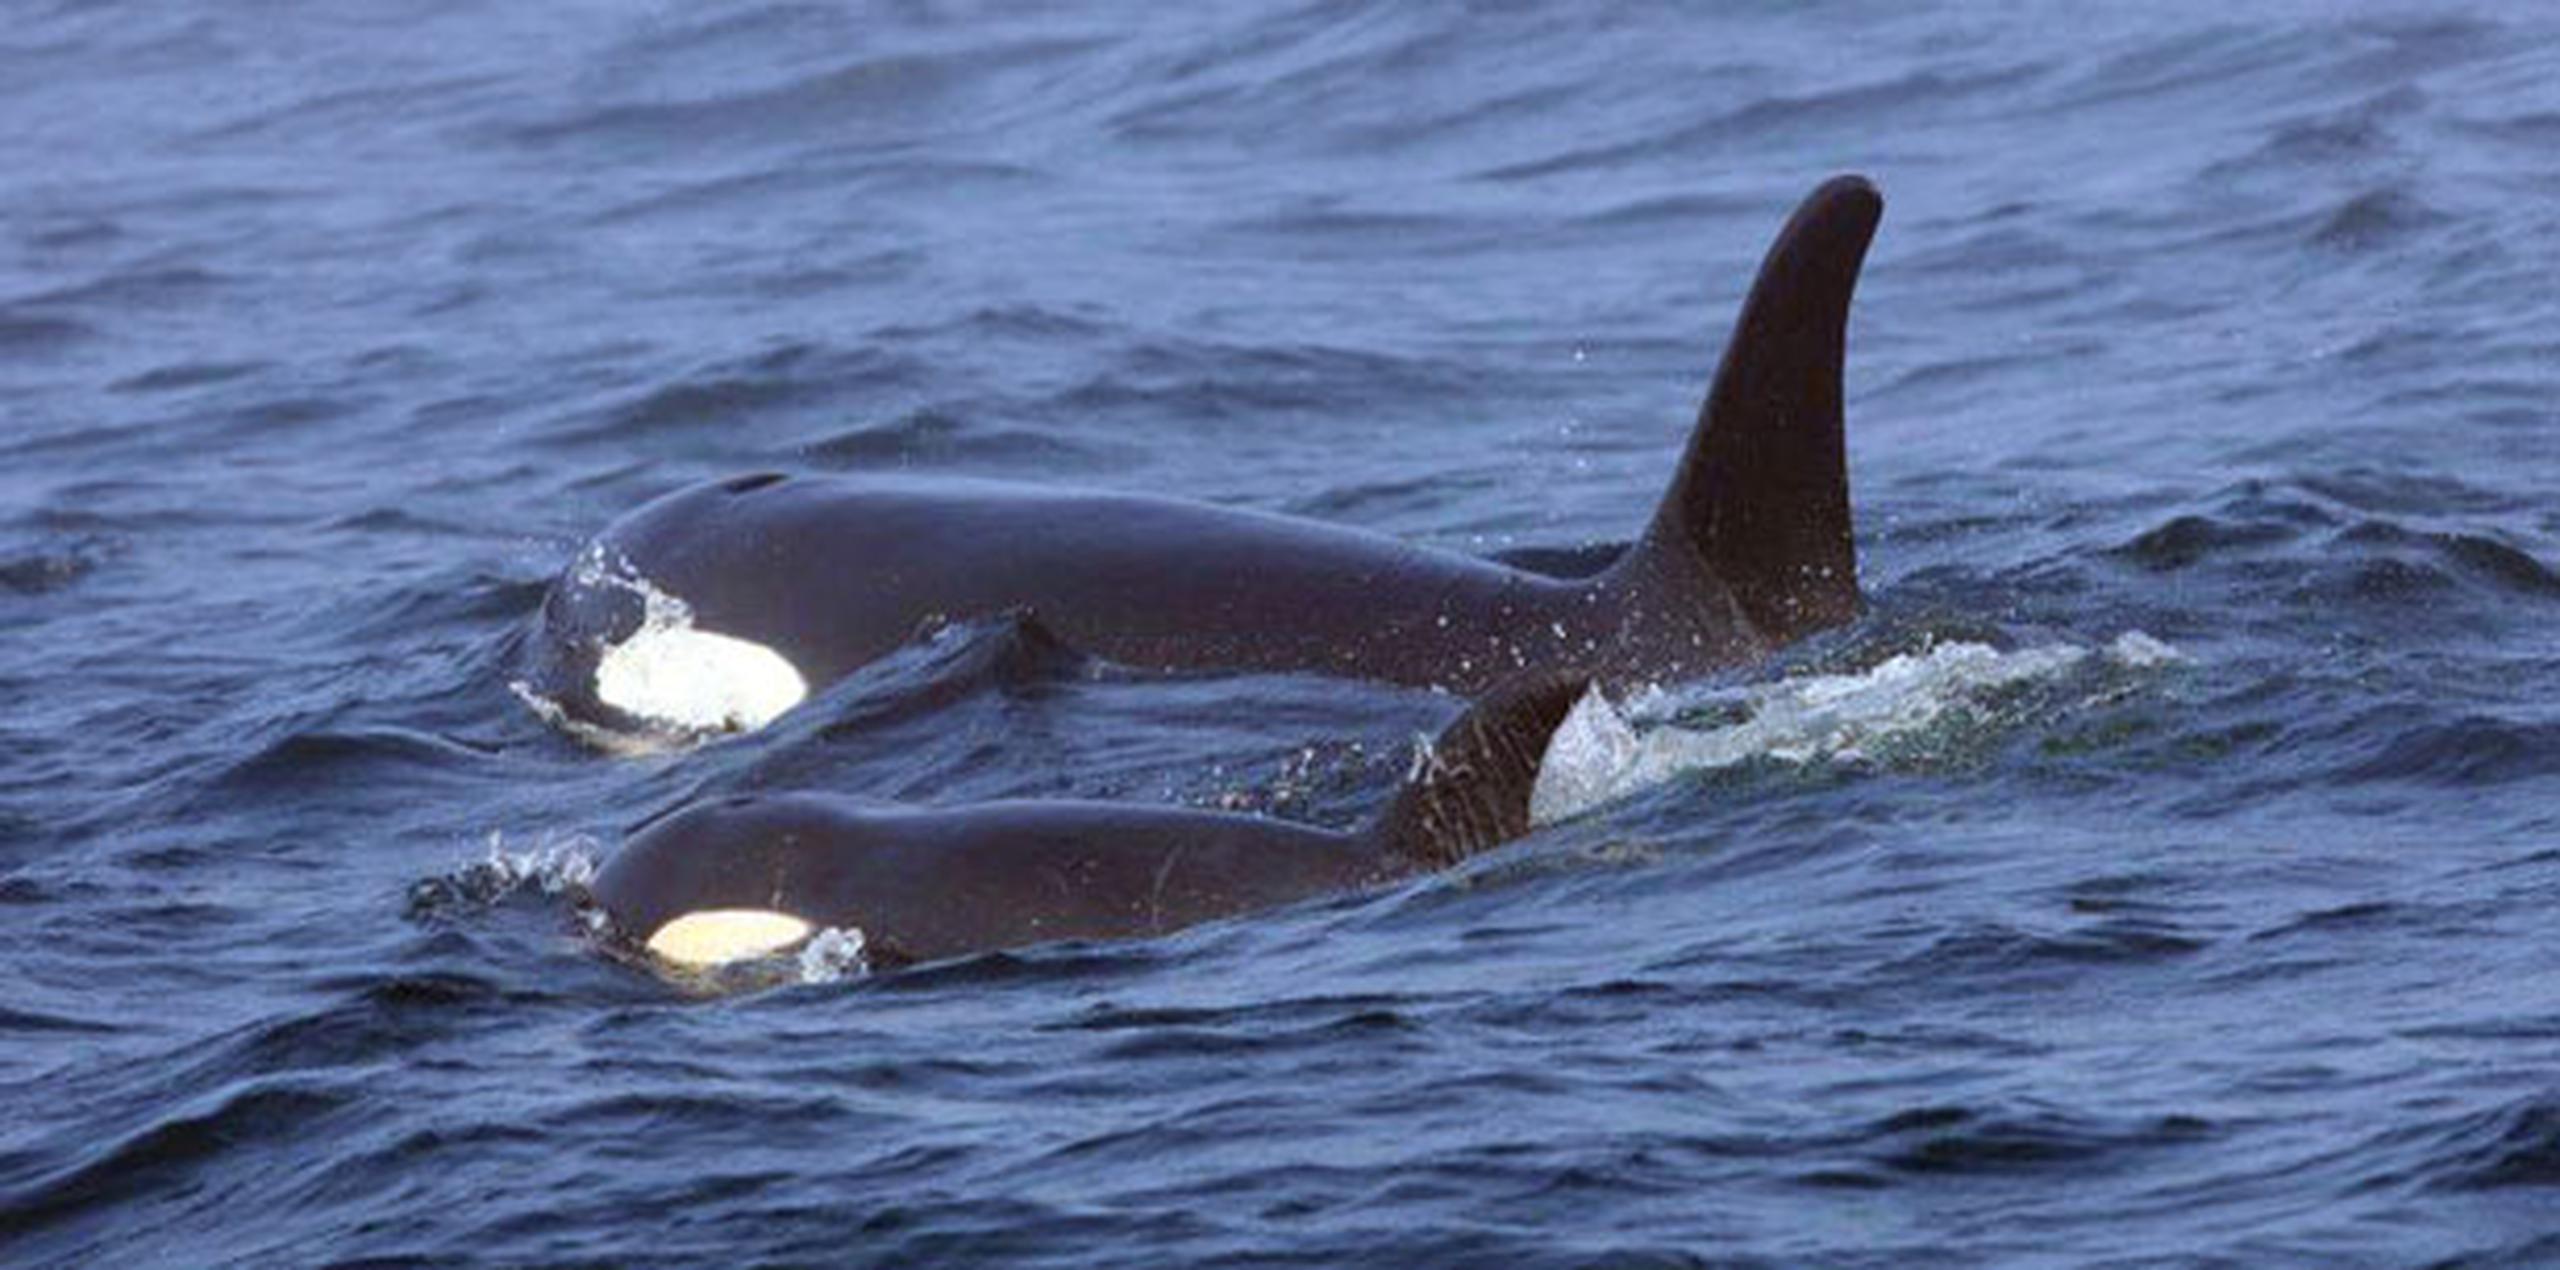 Ken Balcomb, del Centro de Investigación de Ballenas, dijo que él cree que la orca, conocida como J50, “está muerta”. (AP)